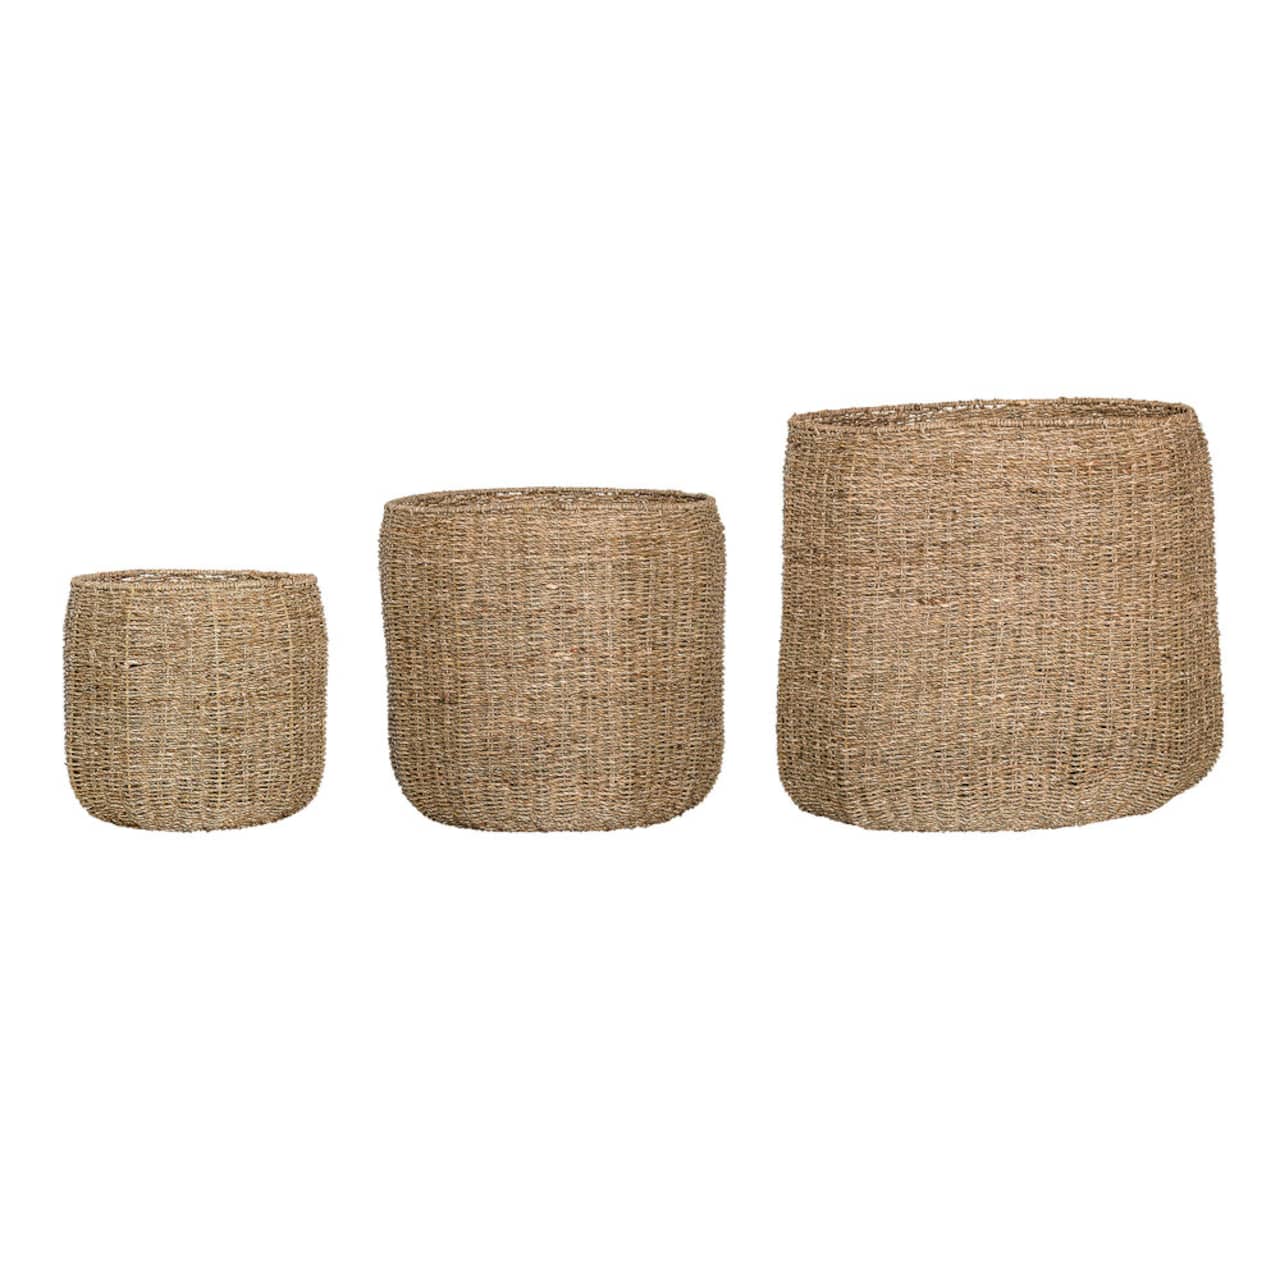 Round Beige Natural Seagrass Baskets, 3ct.